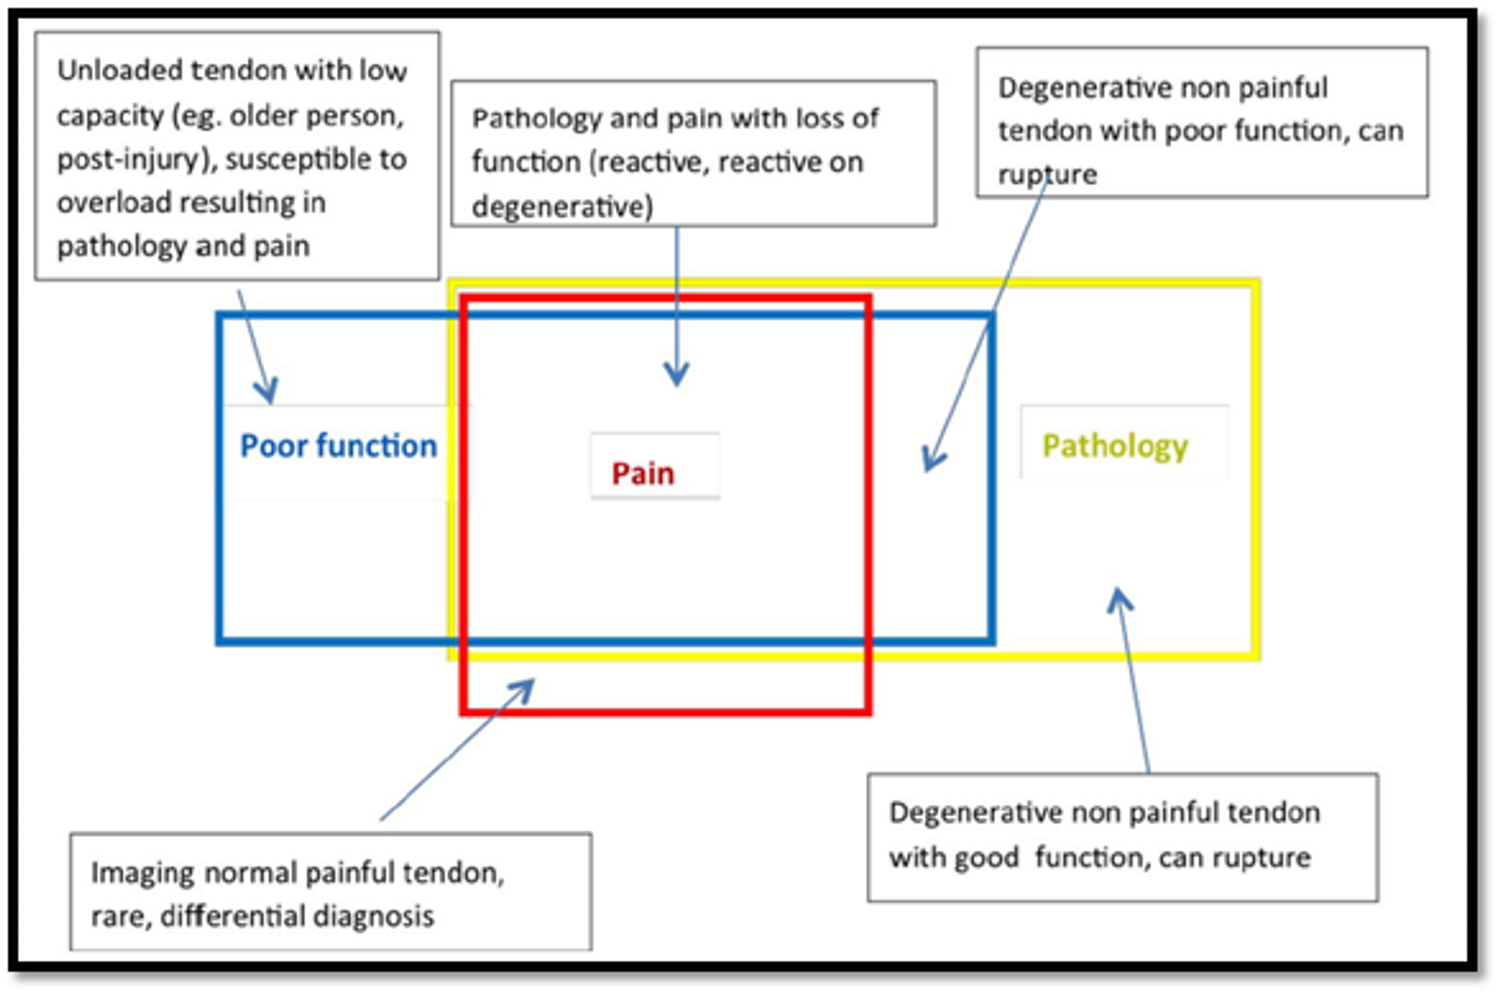 Imagen 2. Relación entre funcionalidad, dolor y patología estructural en el tendón [8].